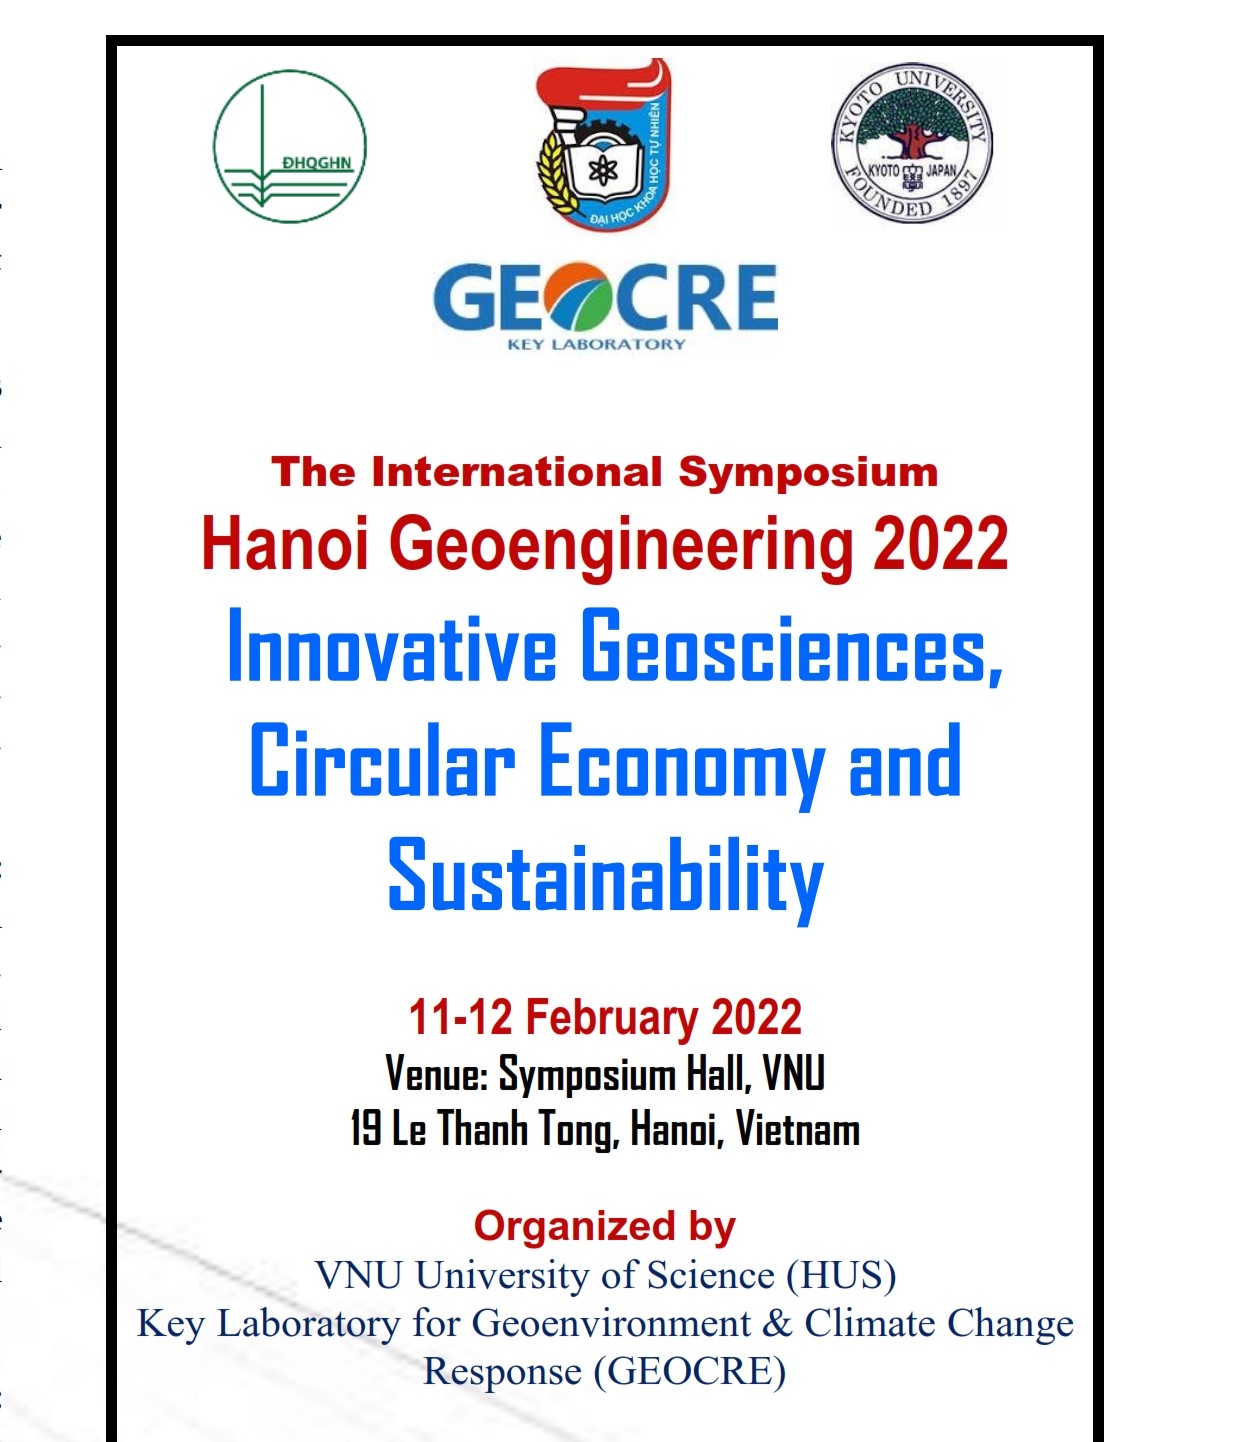 [THÔNG BÁO] Hội nghị Khoa học Quốc tế Hanoi Geoengineering 2022